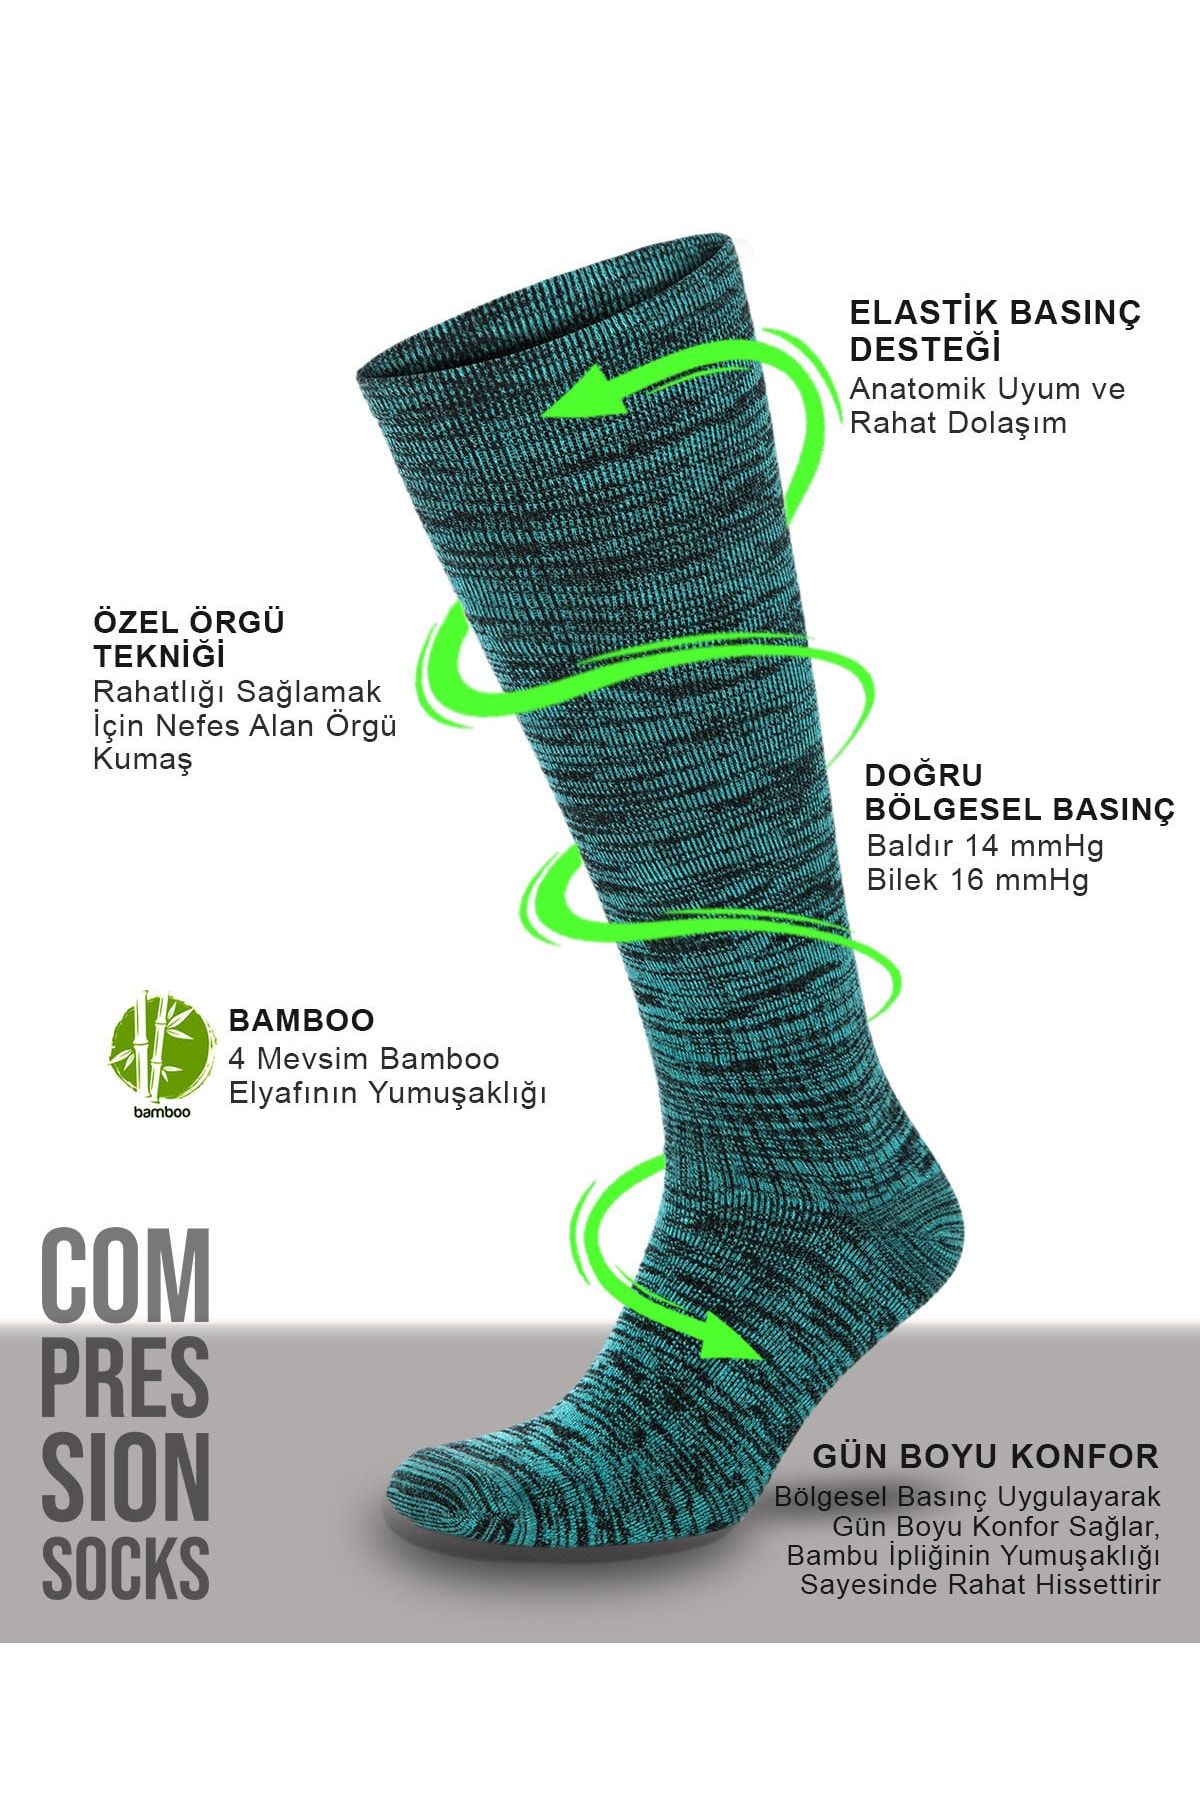 BULG Bambu Turkuaz Muline Renk Kompresyon Çorabı Özel Basınçlı